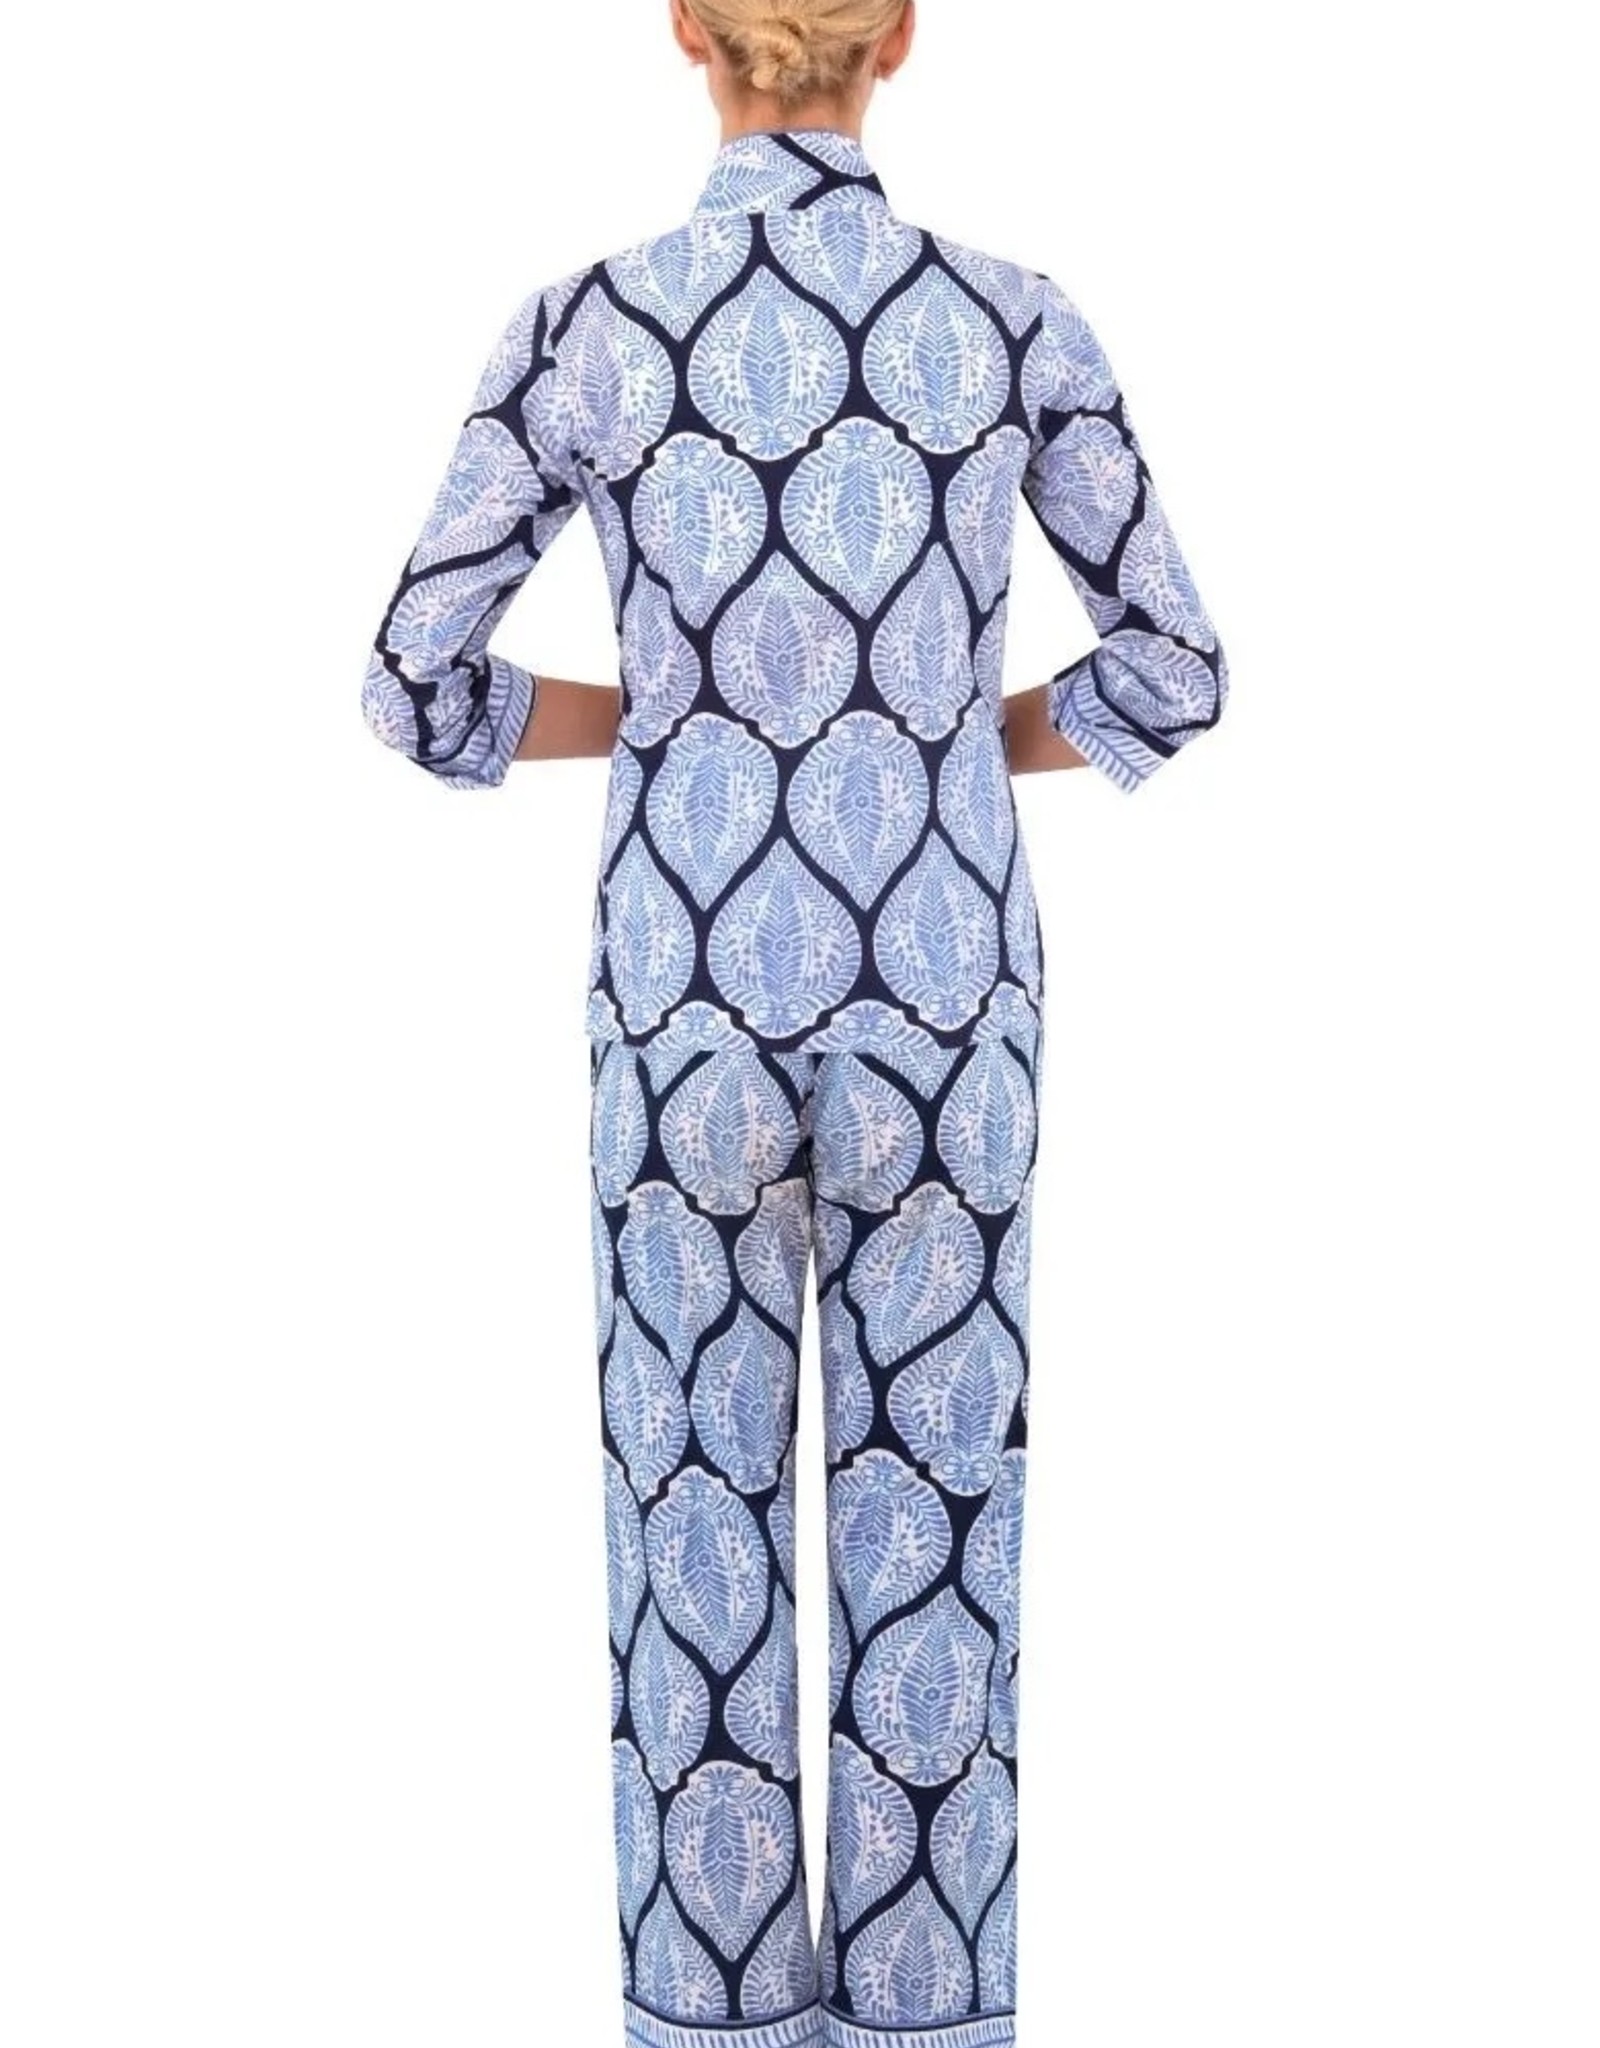 Gretchen Scott Gretchen Scott Pajama PJ Set